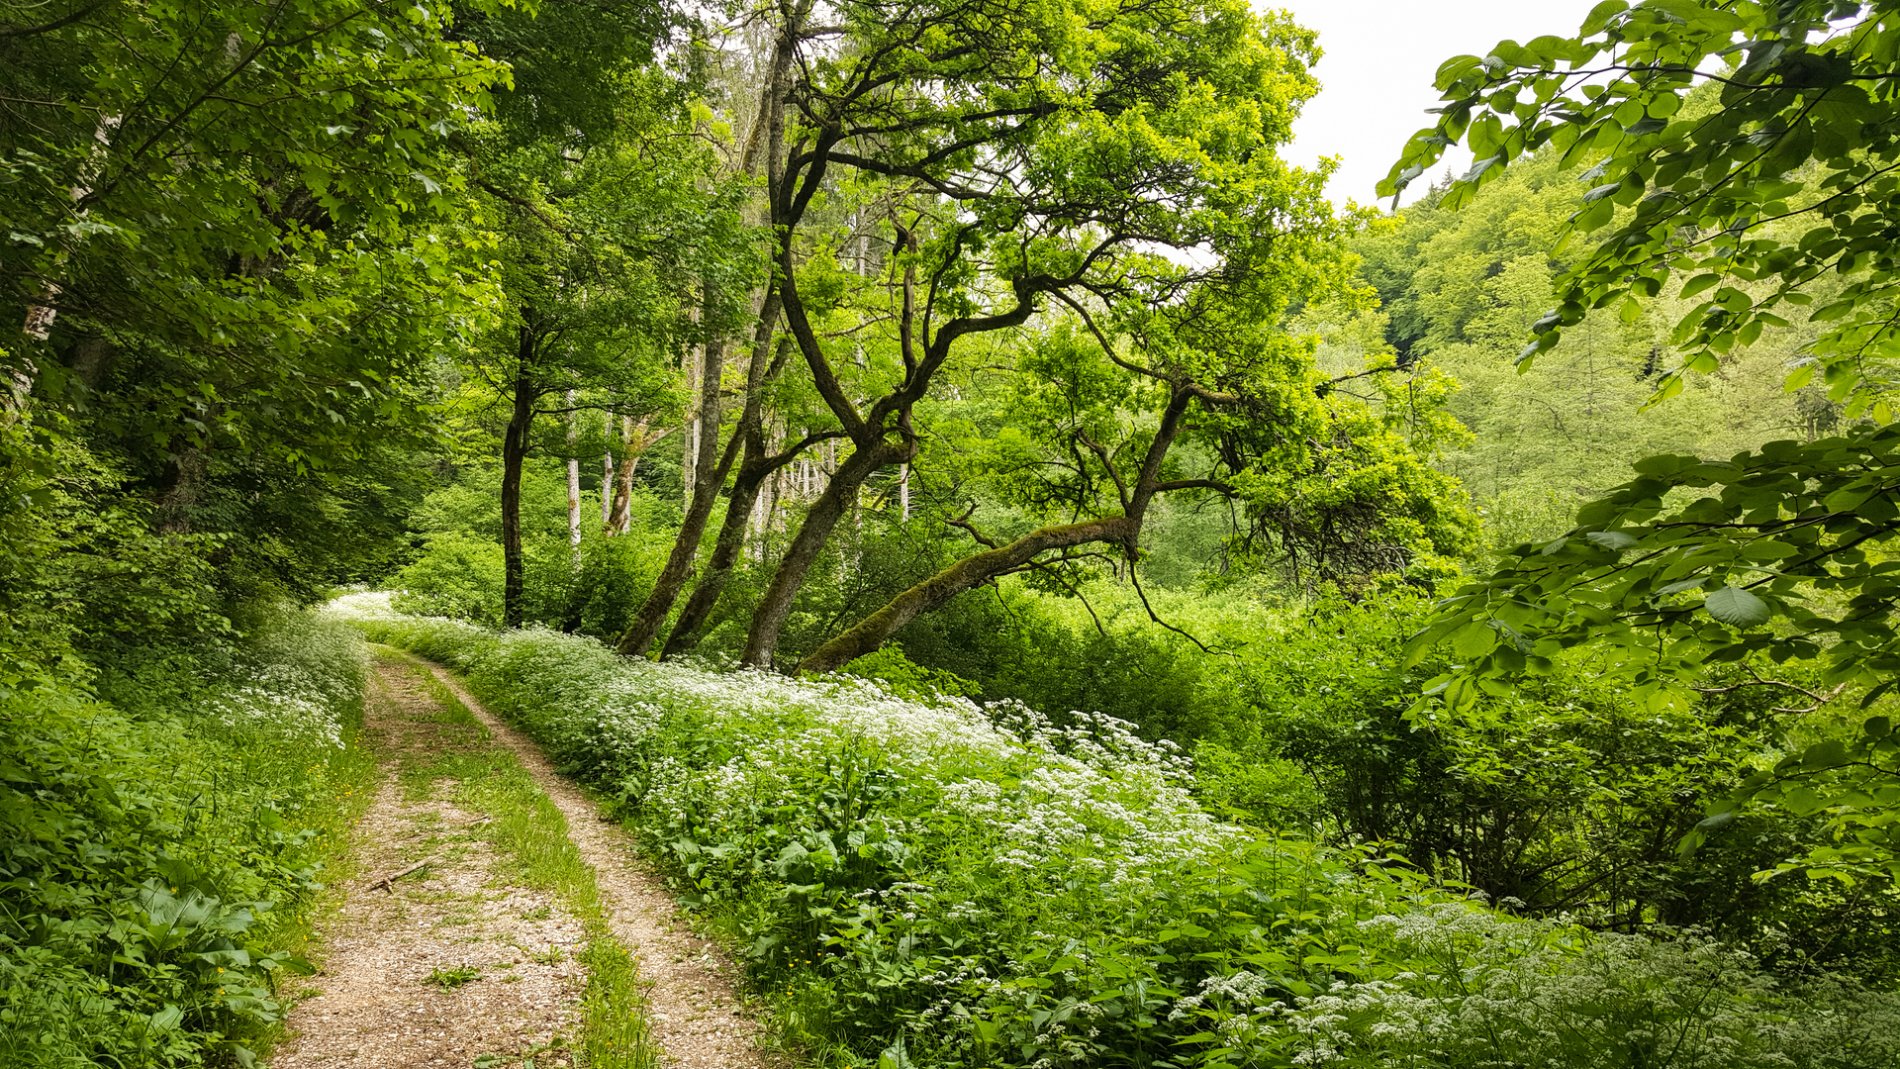 Das Brucktal im ehemaligen Truppenübungsplatz bei Münsingen im Biosphärengebiet Schwäbische Alb. Ein wilder Schotterweg führt durch einen Wald, der in sattem grün erstrahlt. Rechts blühen weiße Blumen.